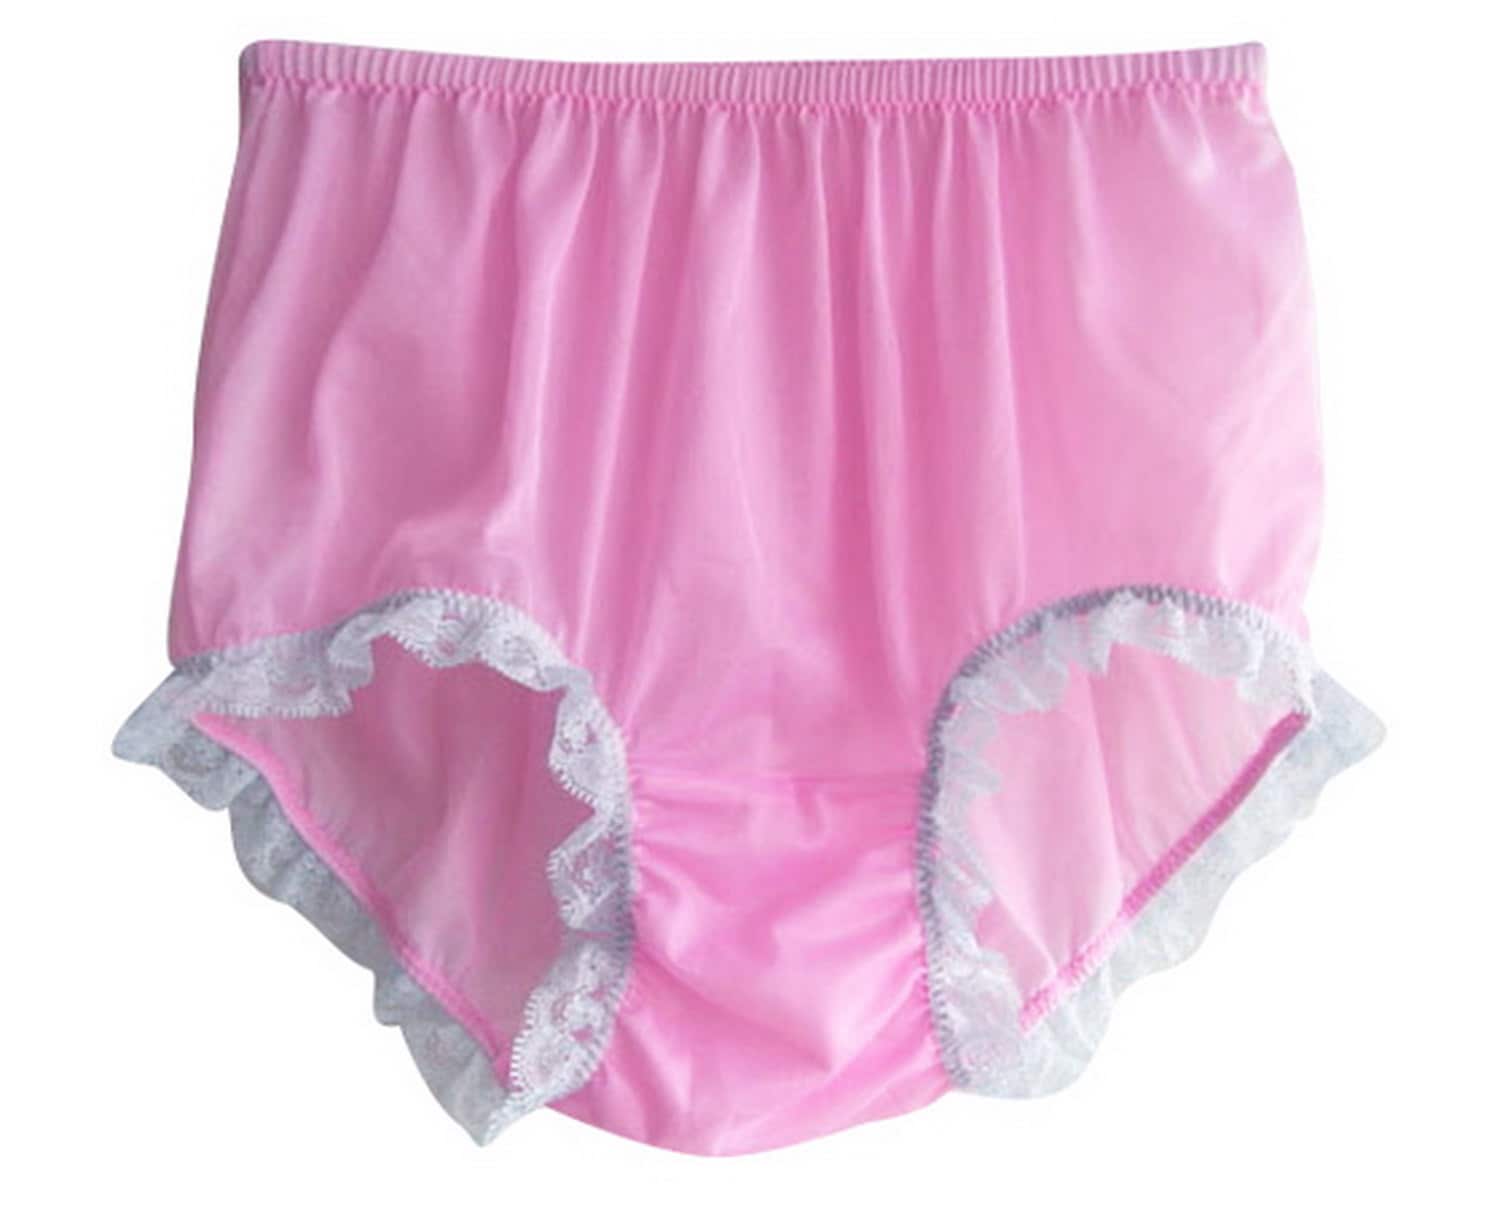 S1H20 PINK Lingerie Fantasy underwear sheer nylon women granny